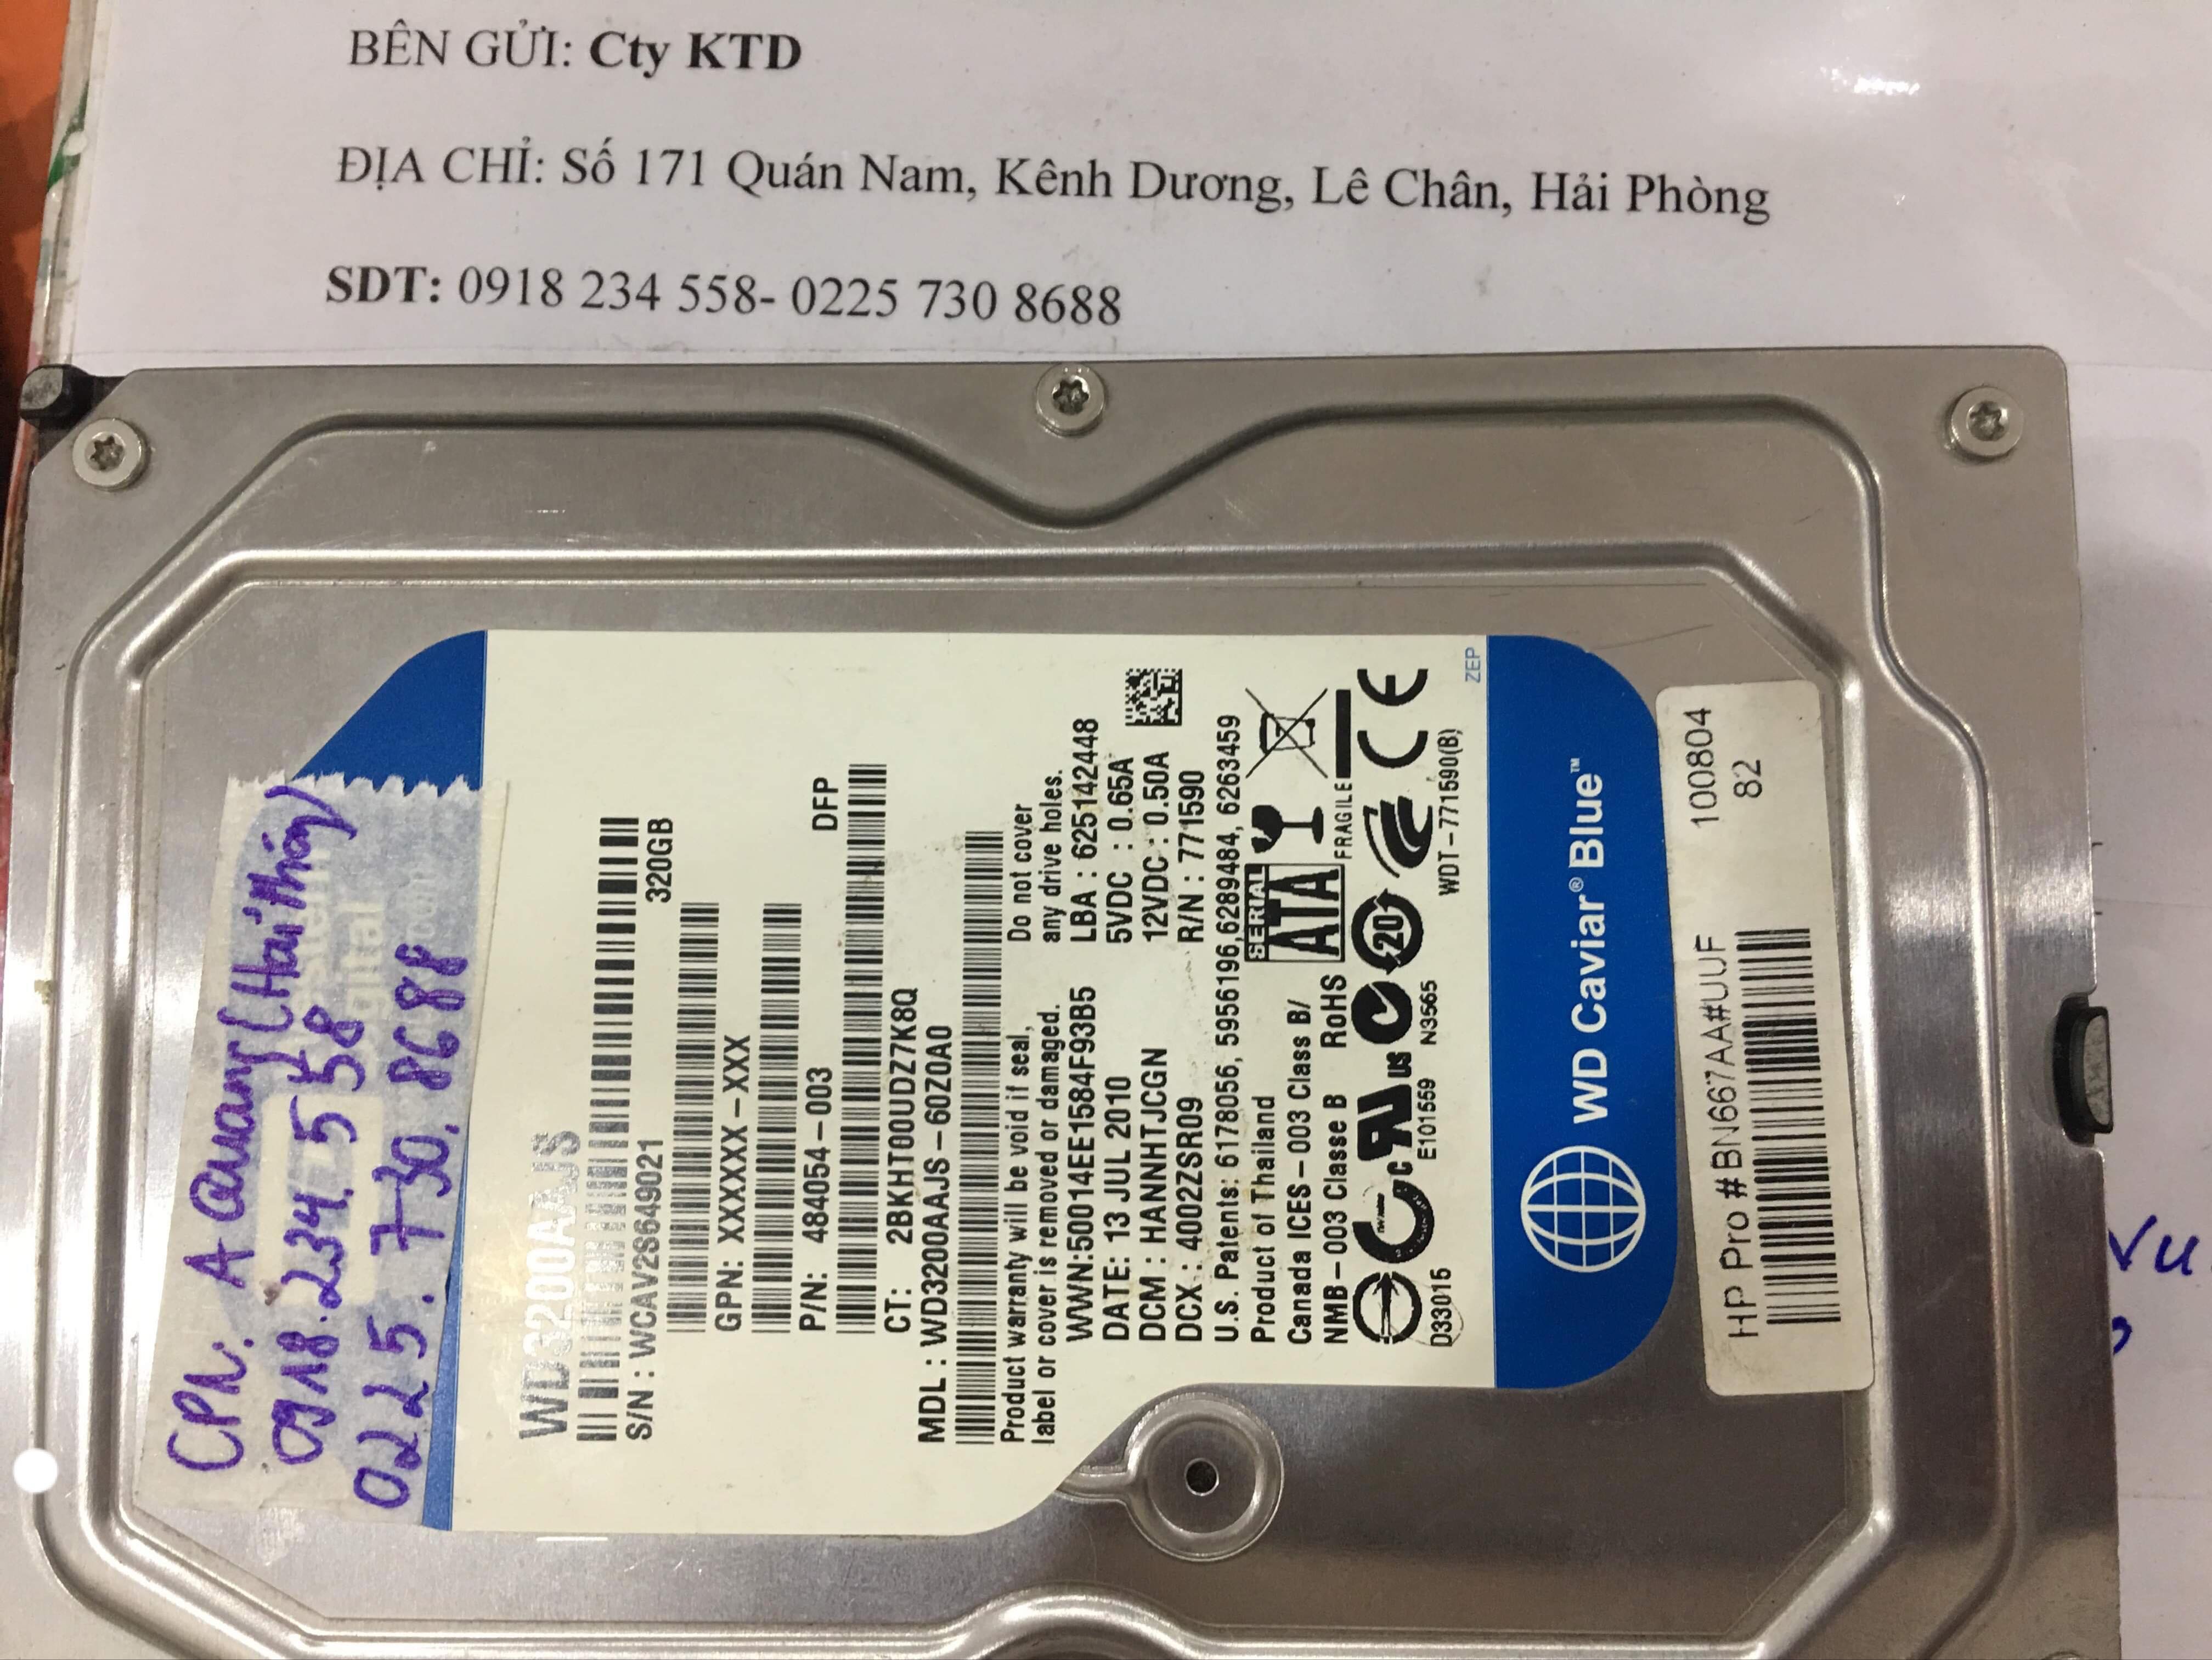 Lấy dữ liệu ổ cứng Western 320GB lỗi cơ tại Hải Phòng 19/10/2019 - cuumaytinh